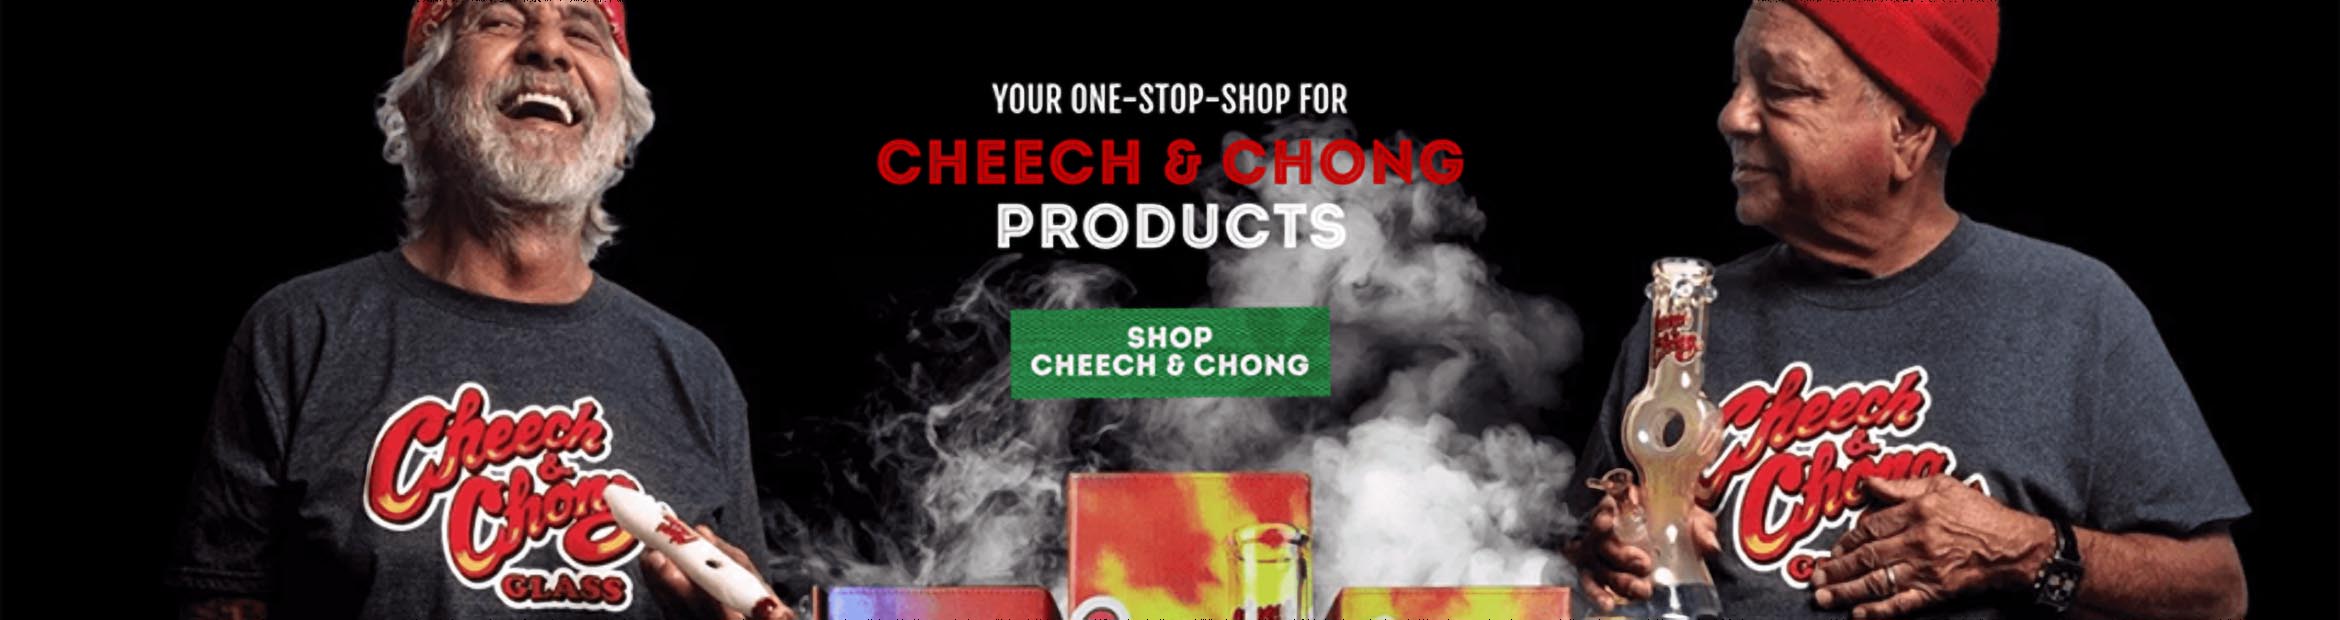 Cheech and Chong Smoking Products